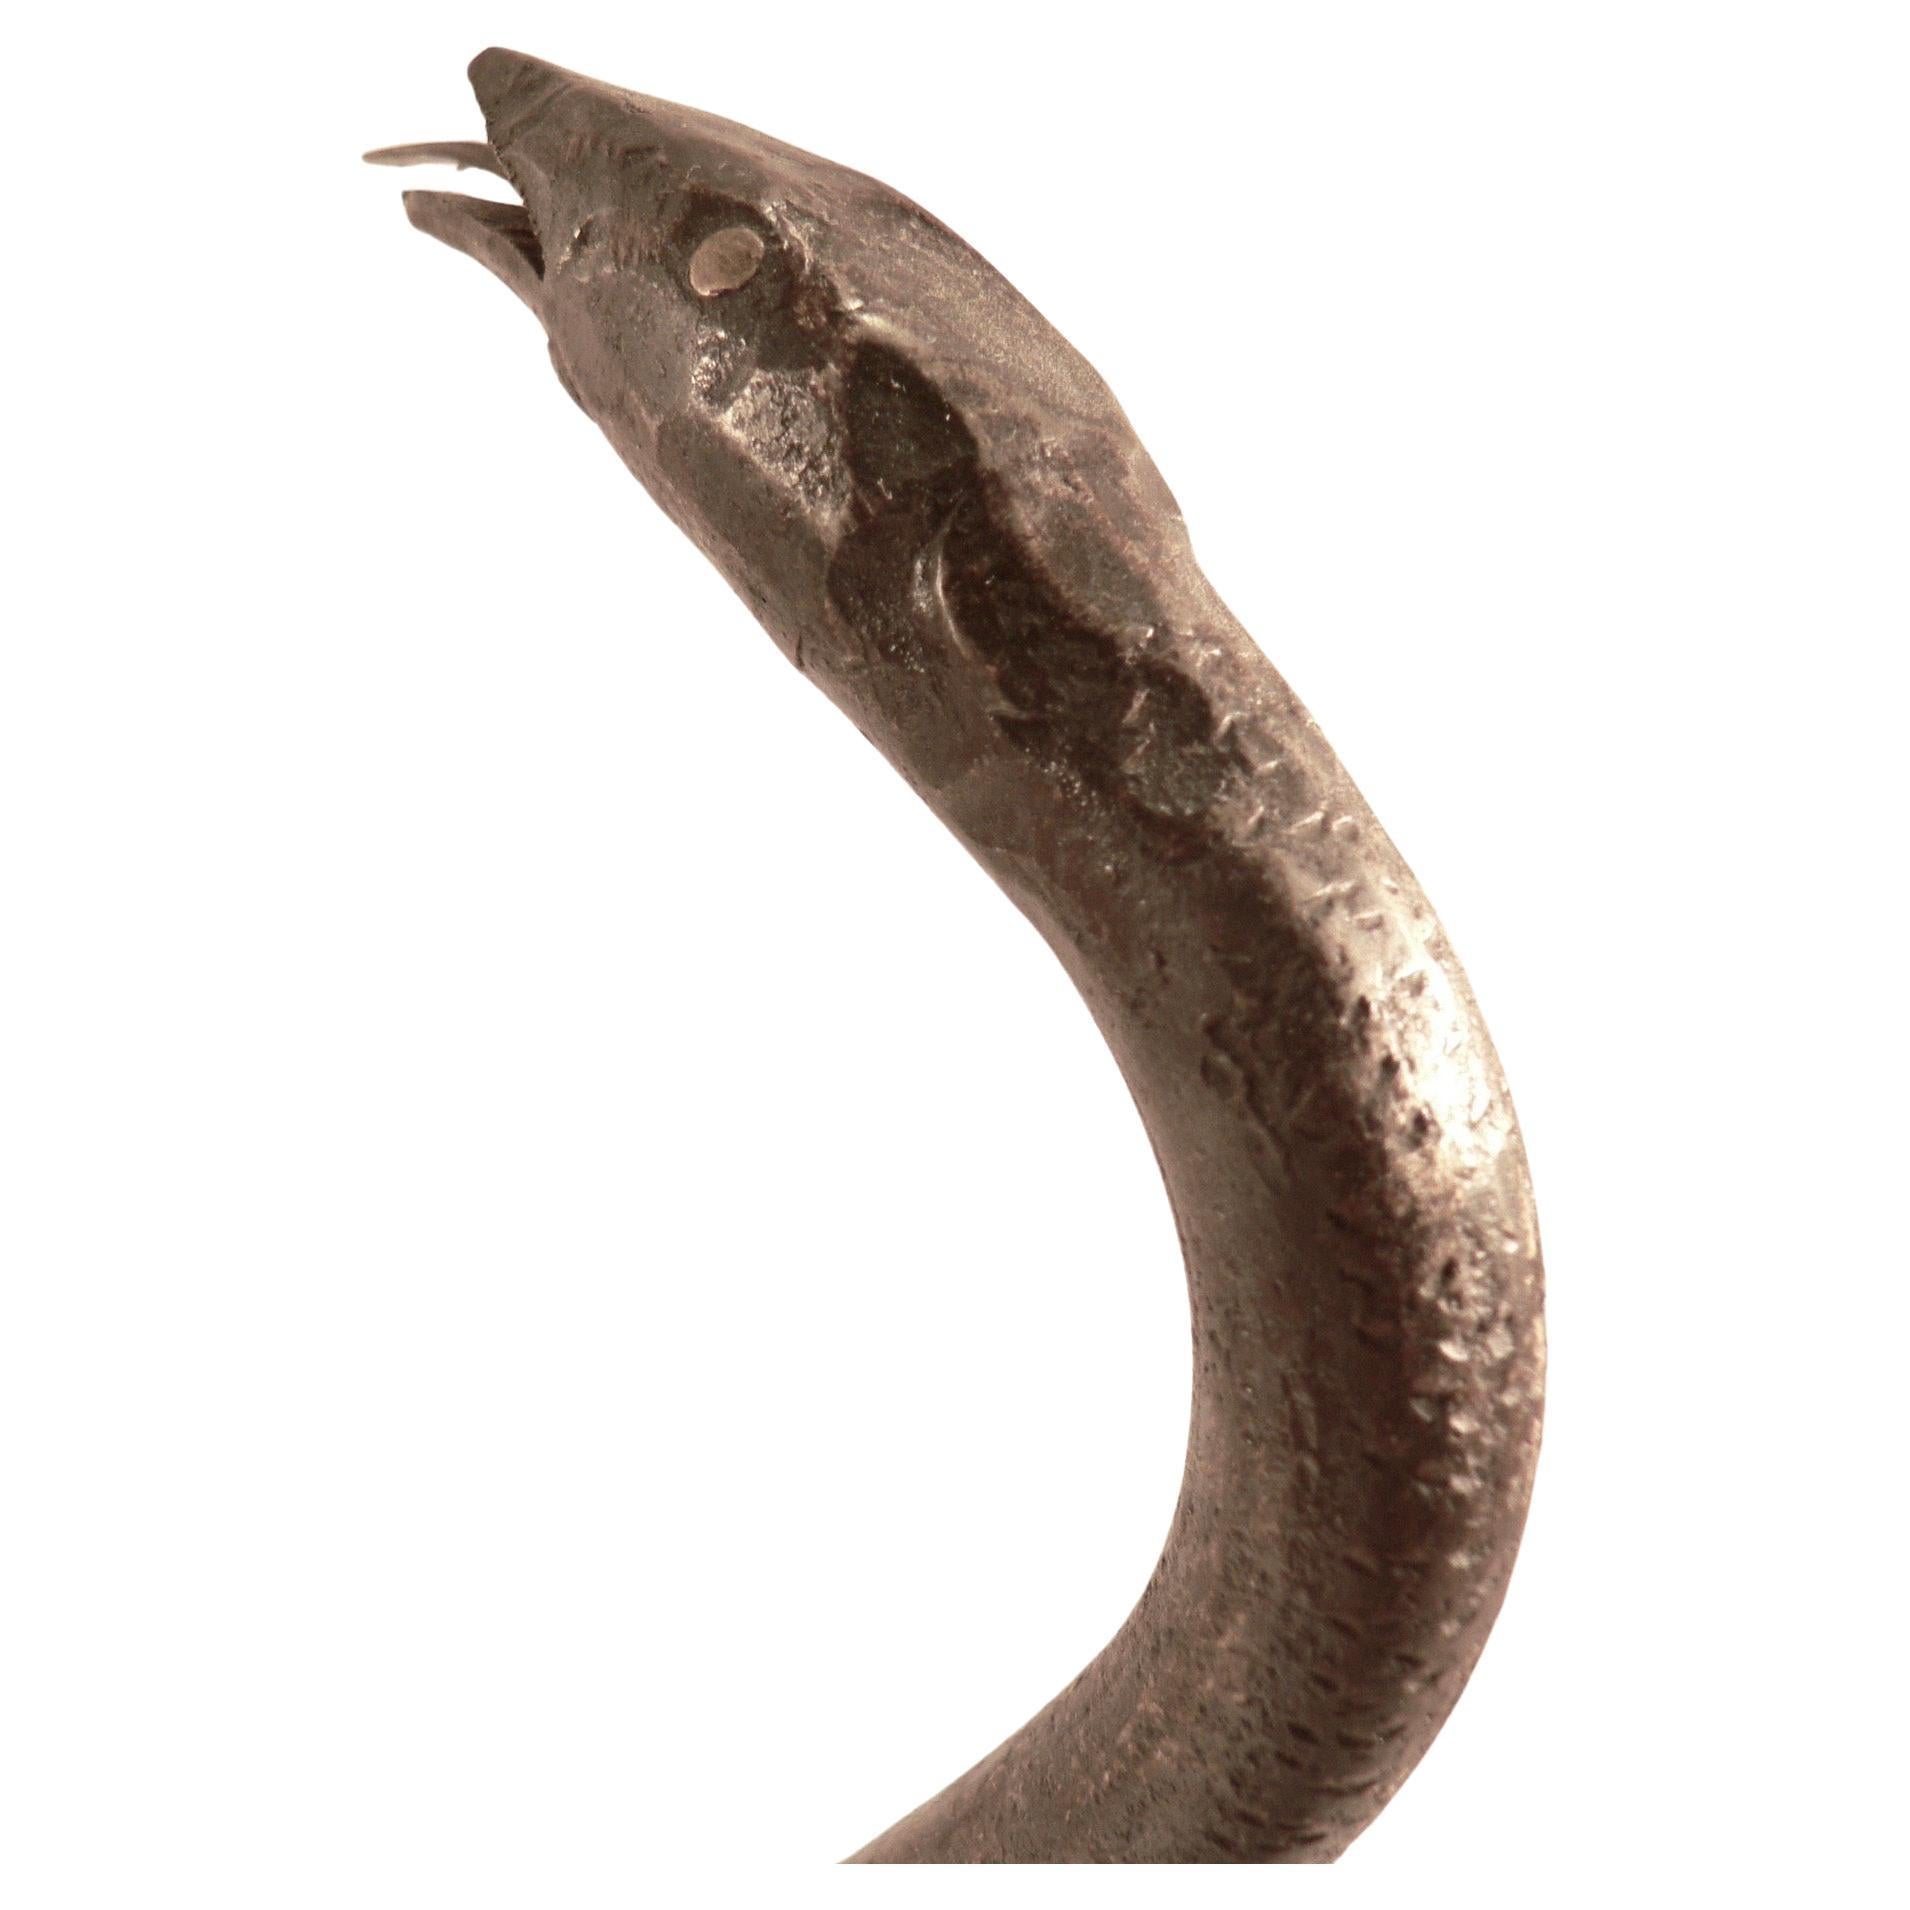 Serpent en fer forgé avec incrustations de laiton (yeux, etc.), pièce d'art populaire du milieu du XXe siècle. Superbe patine pour une pièce rare.